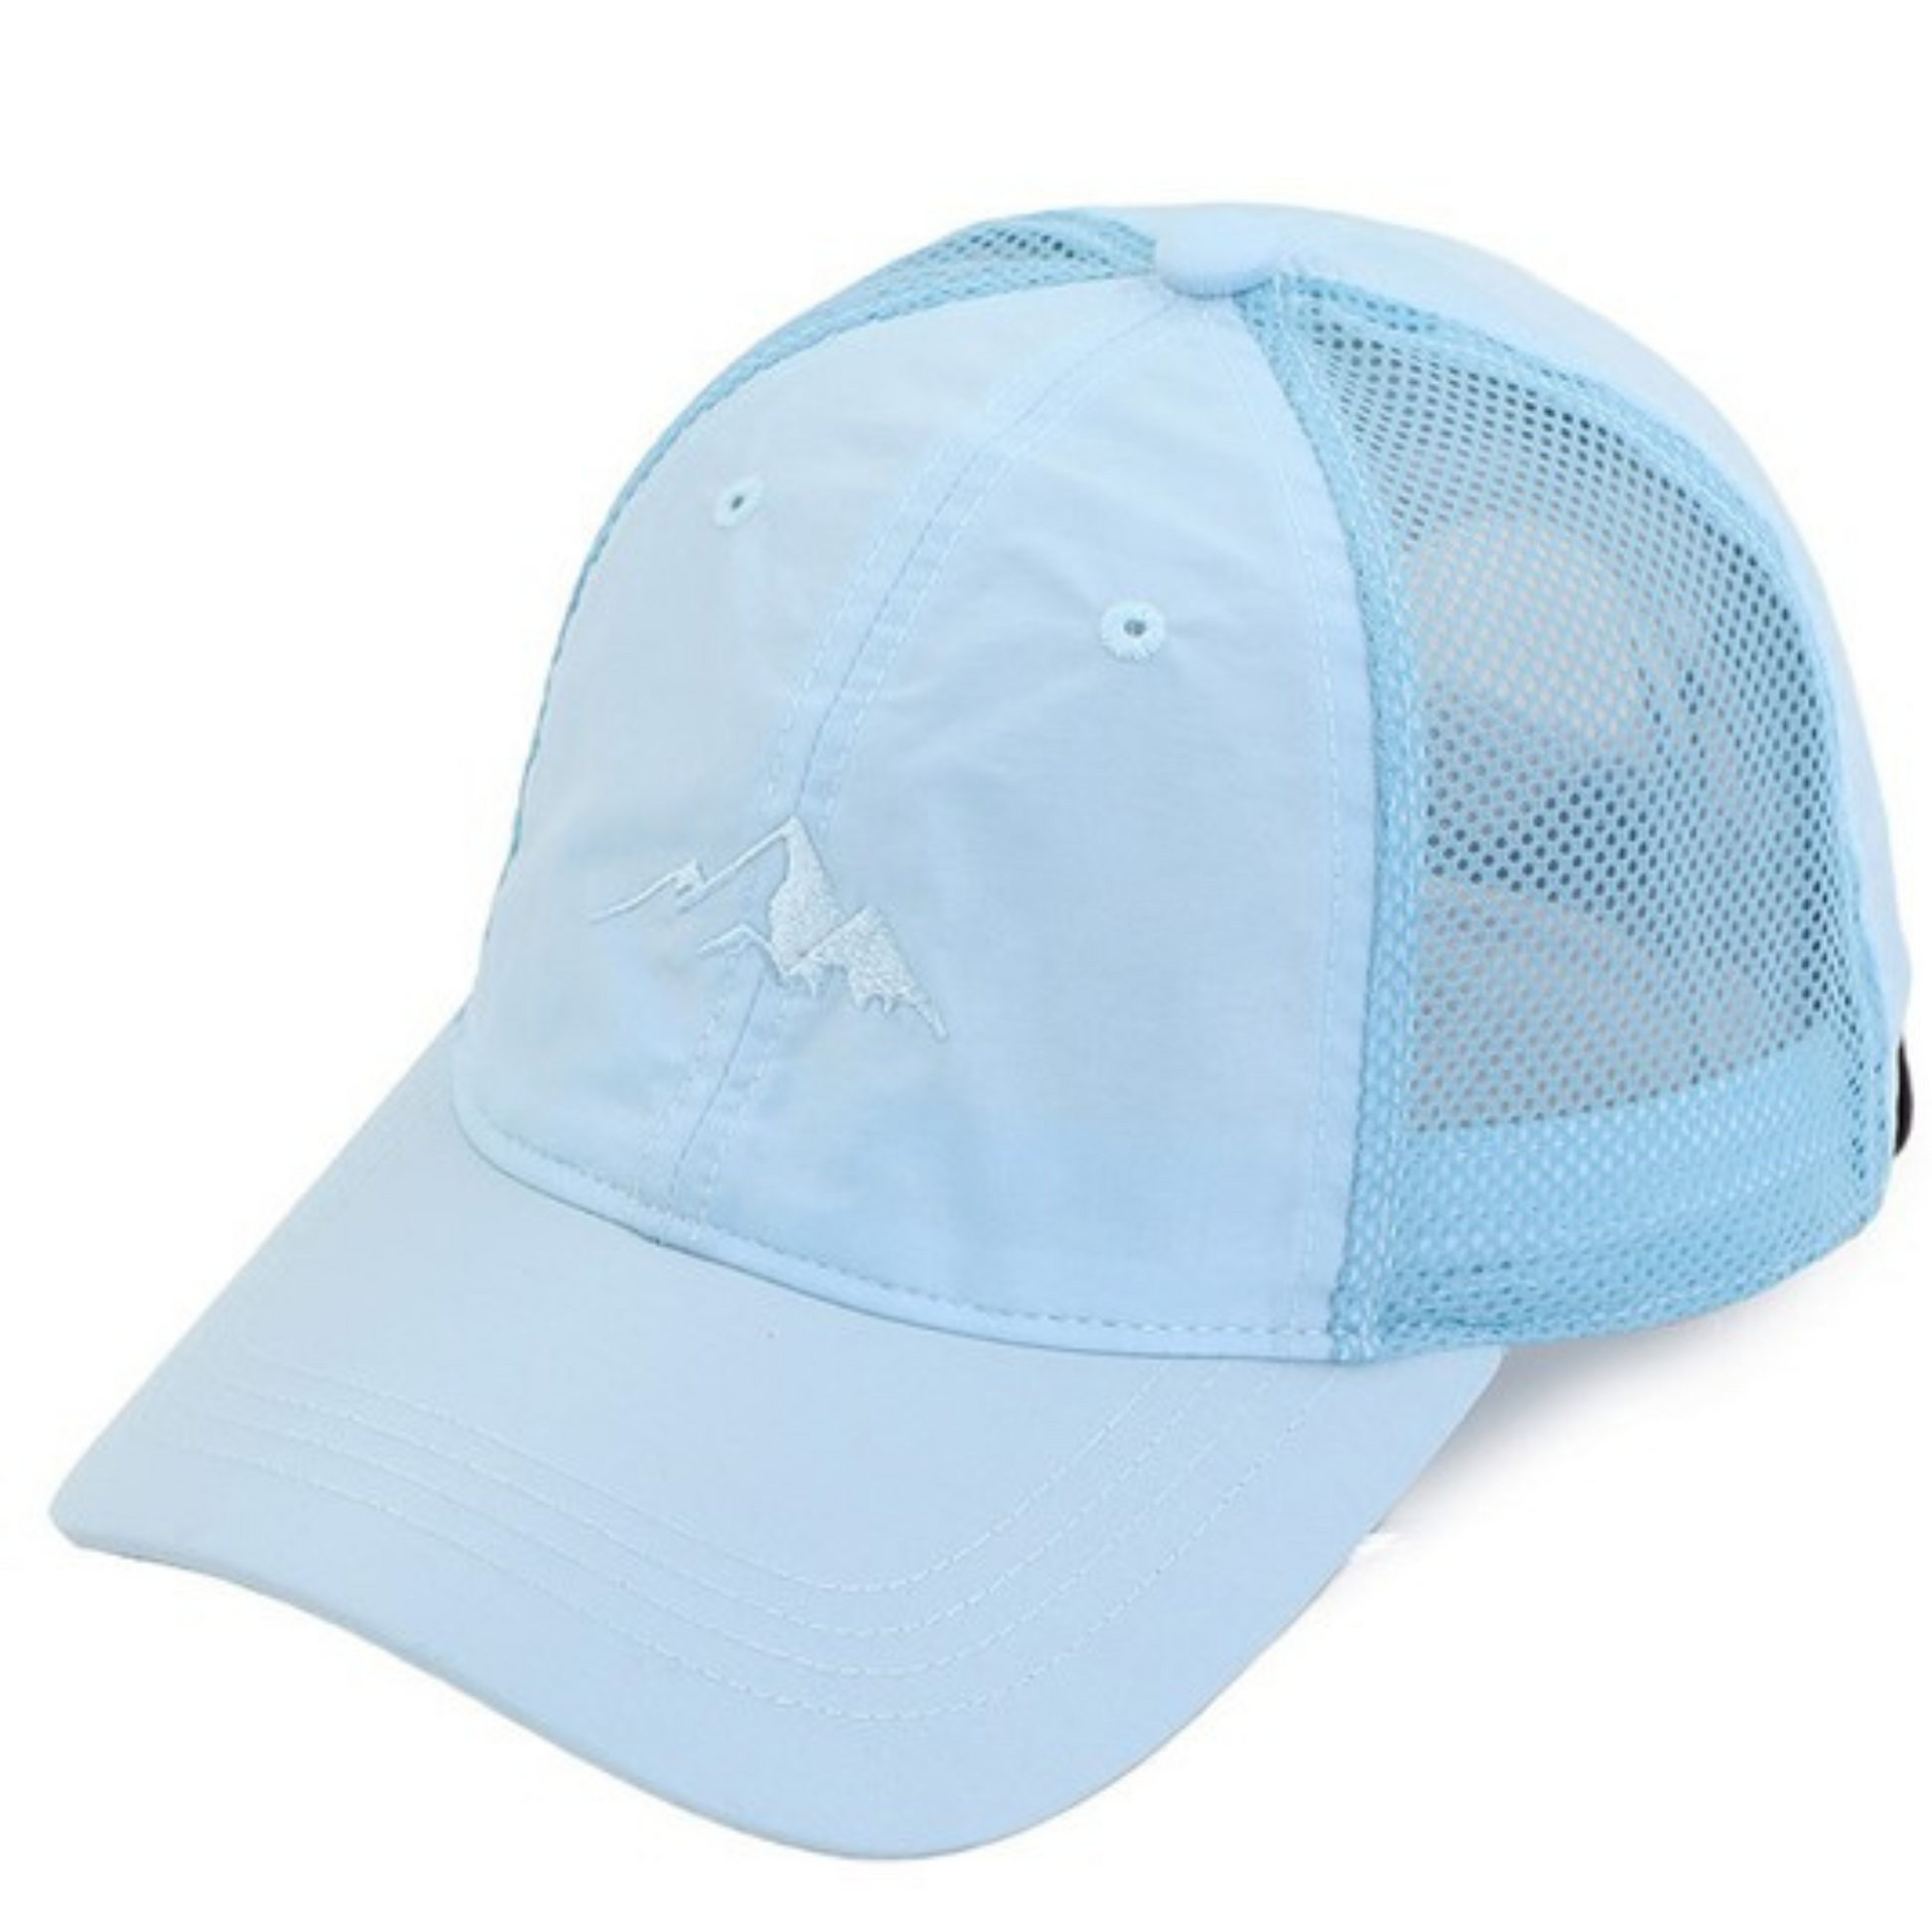 Weightless windbreaker baseball cap in light blue